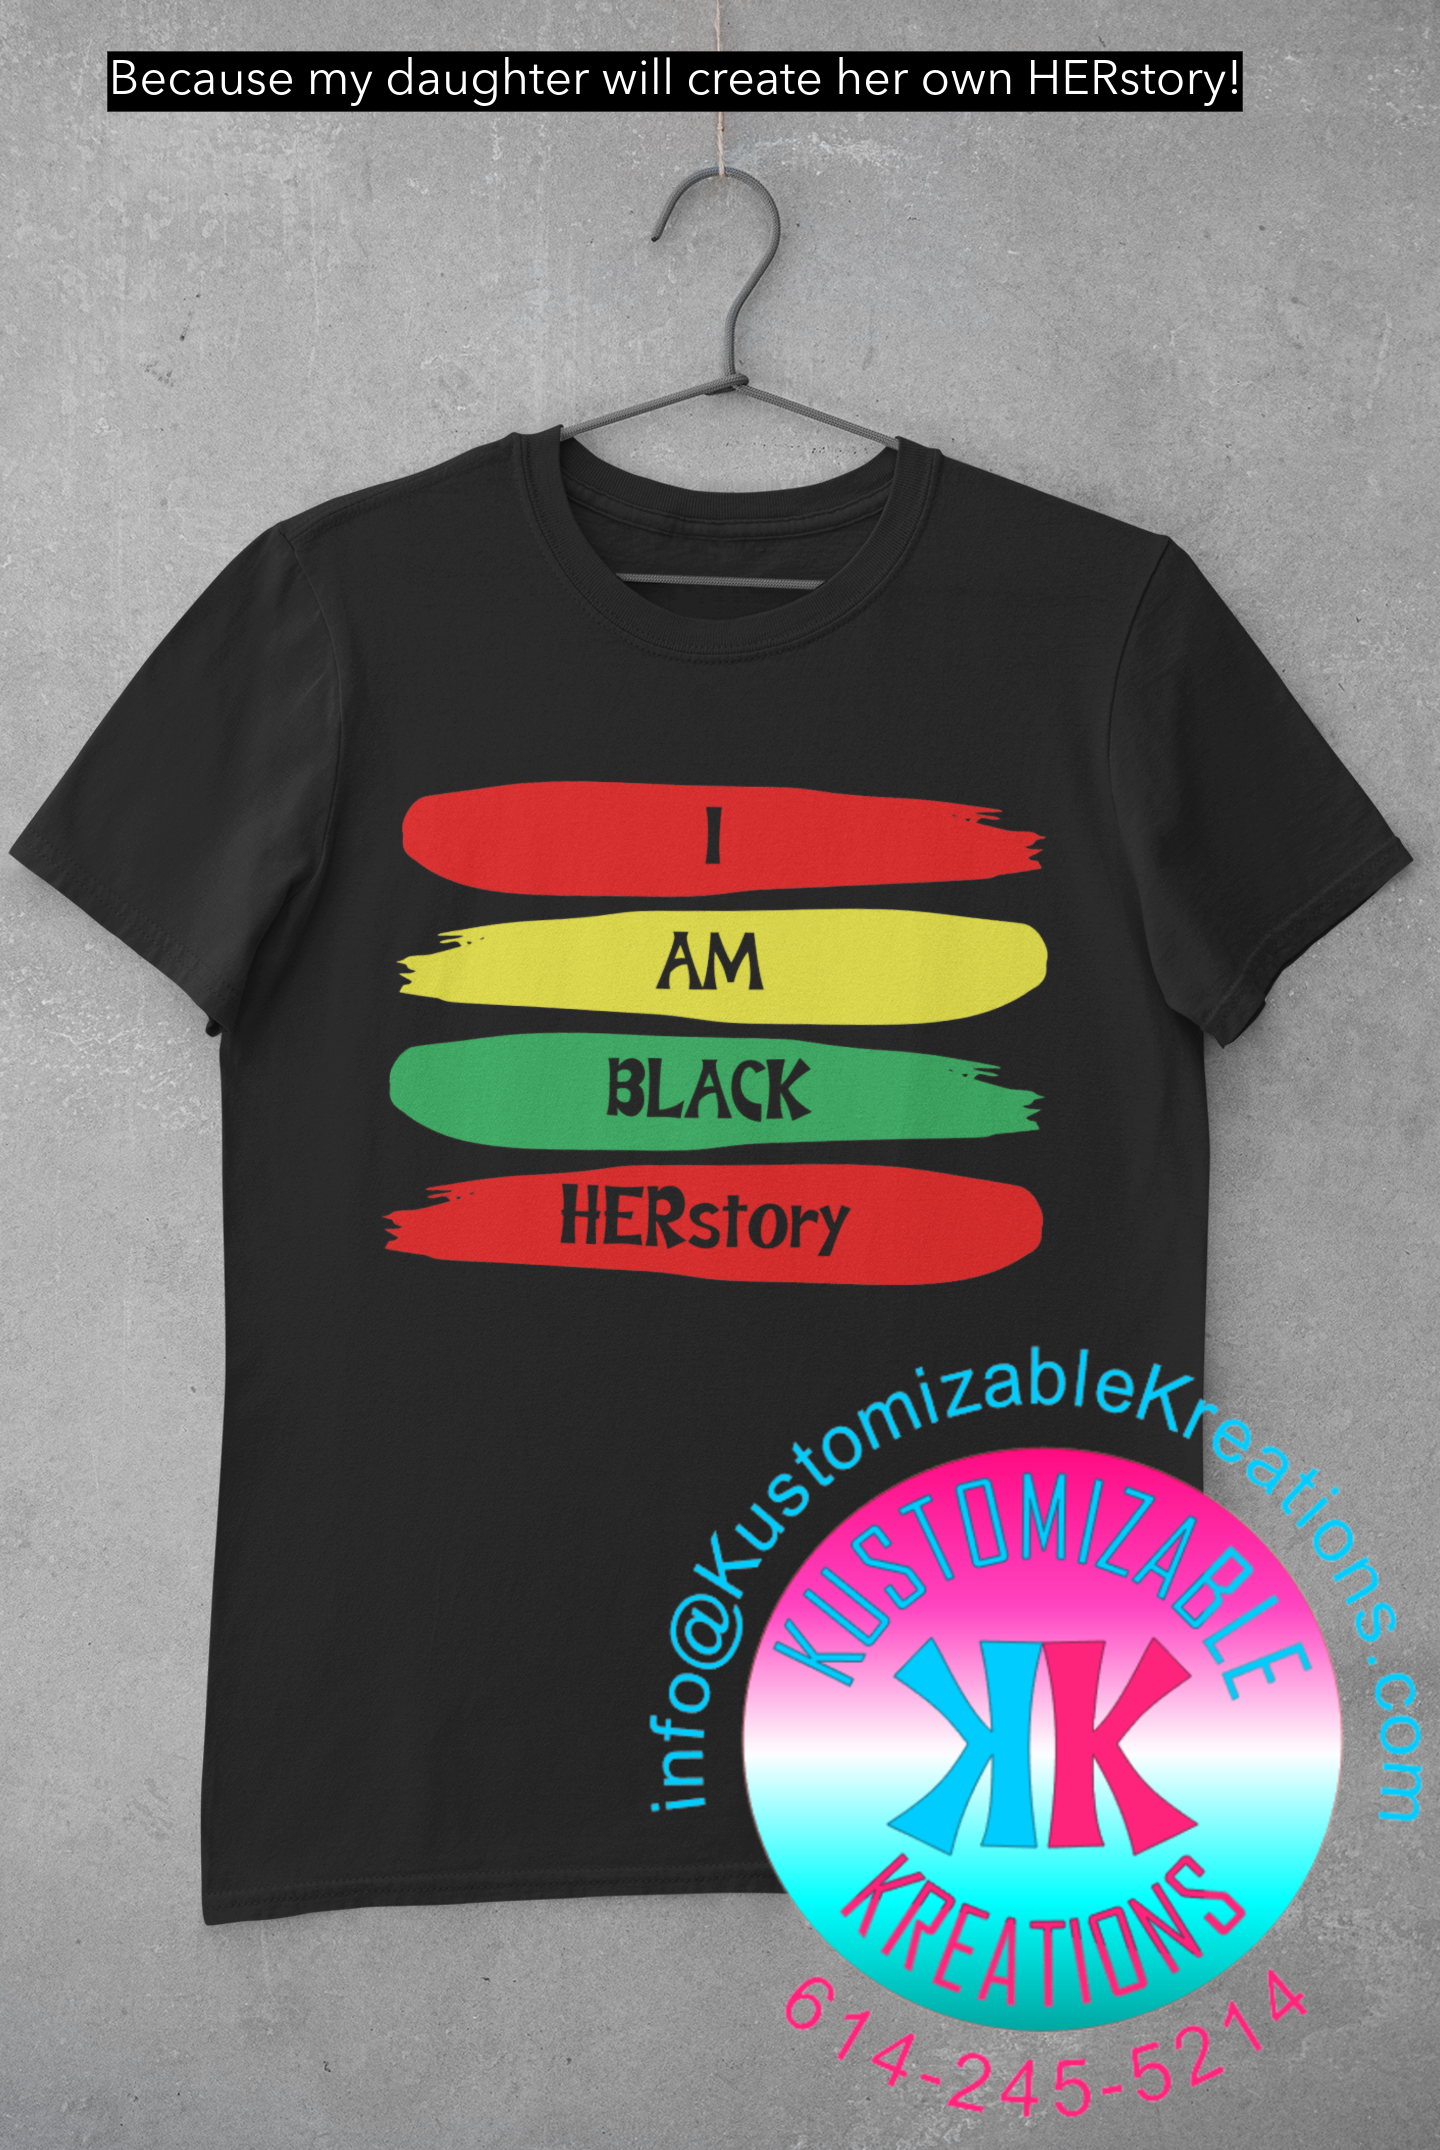 I AM BLACK HERSTORY!